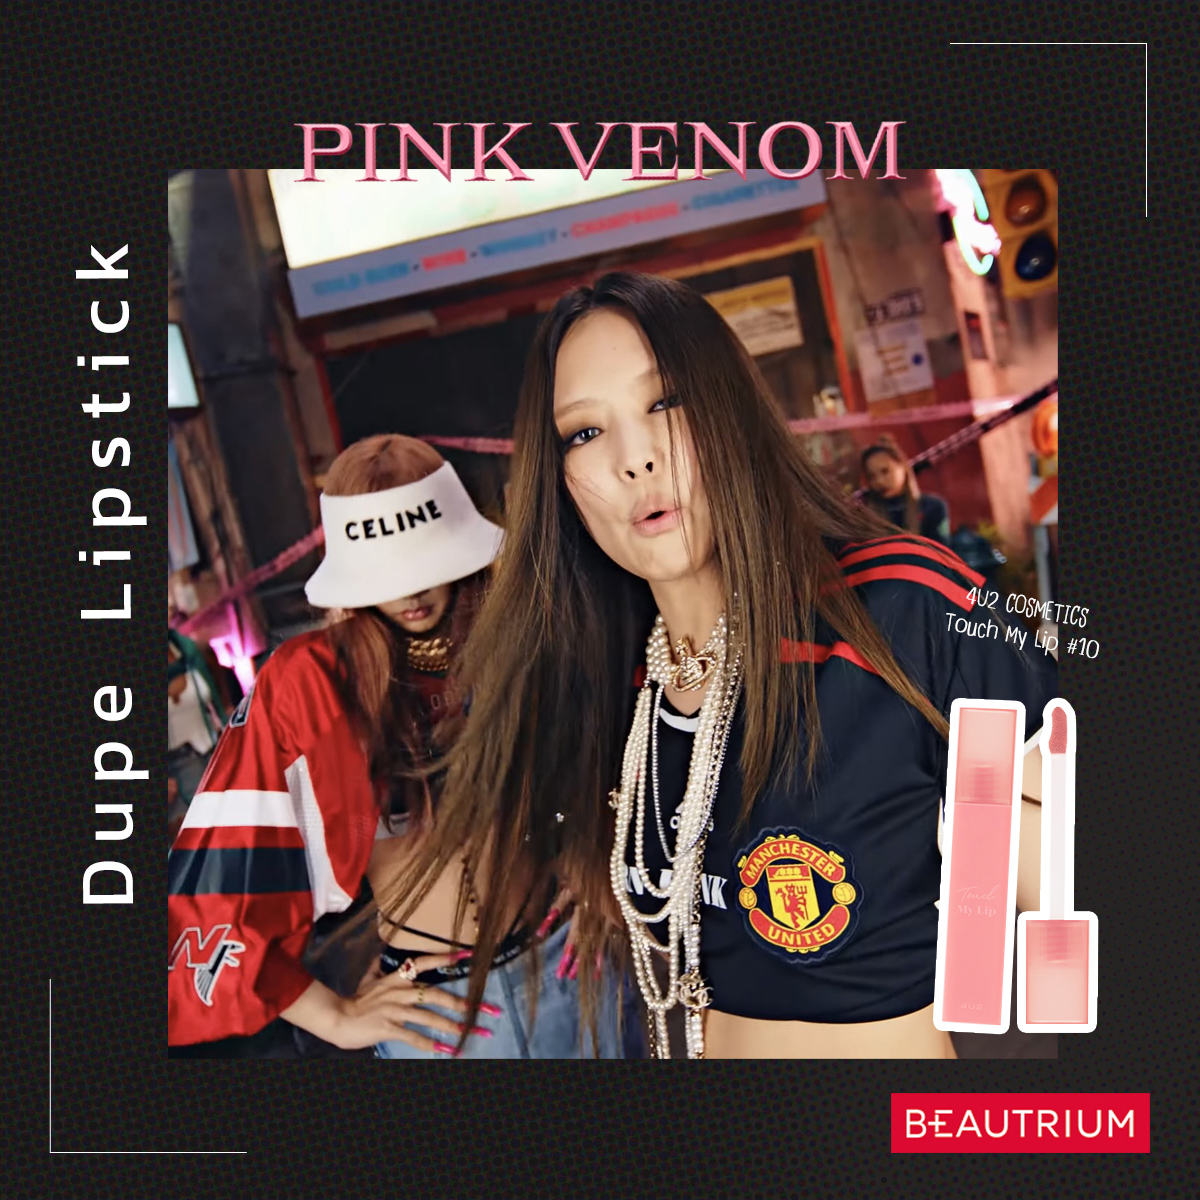 ฉลอง 100 ล้านวิว! แจกพิกัดลิป Dupe ตามสาว ๆ BlackPink ใน MV Pink Venom